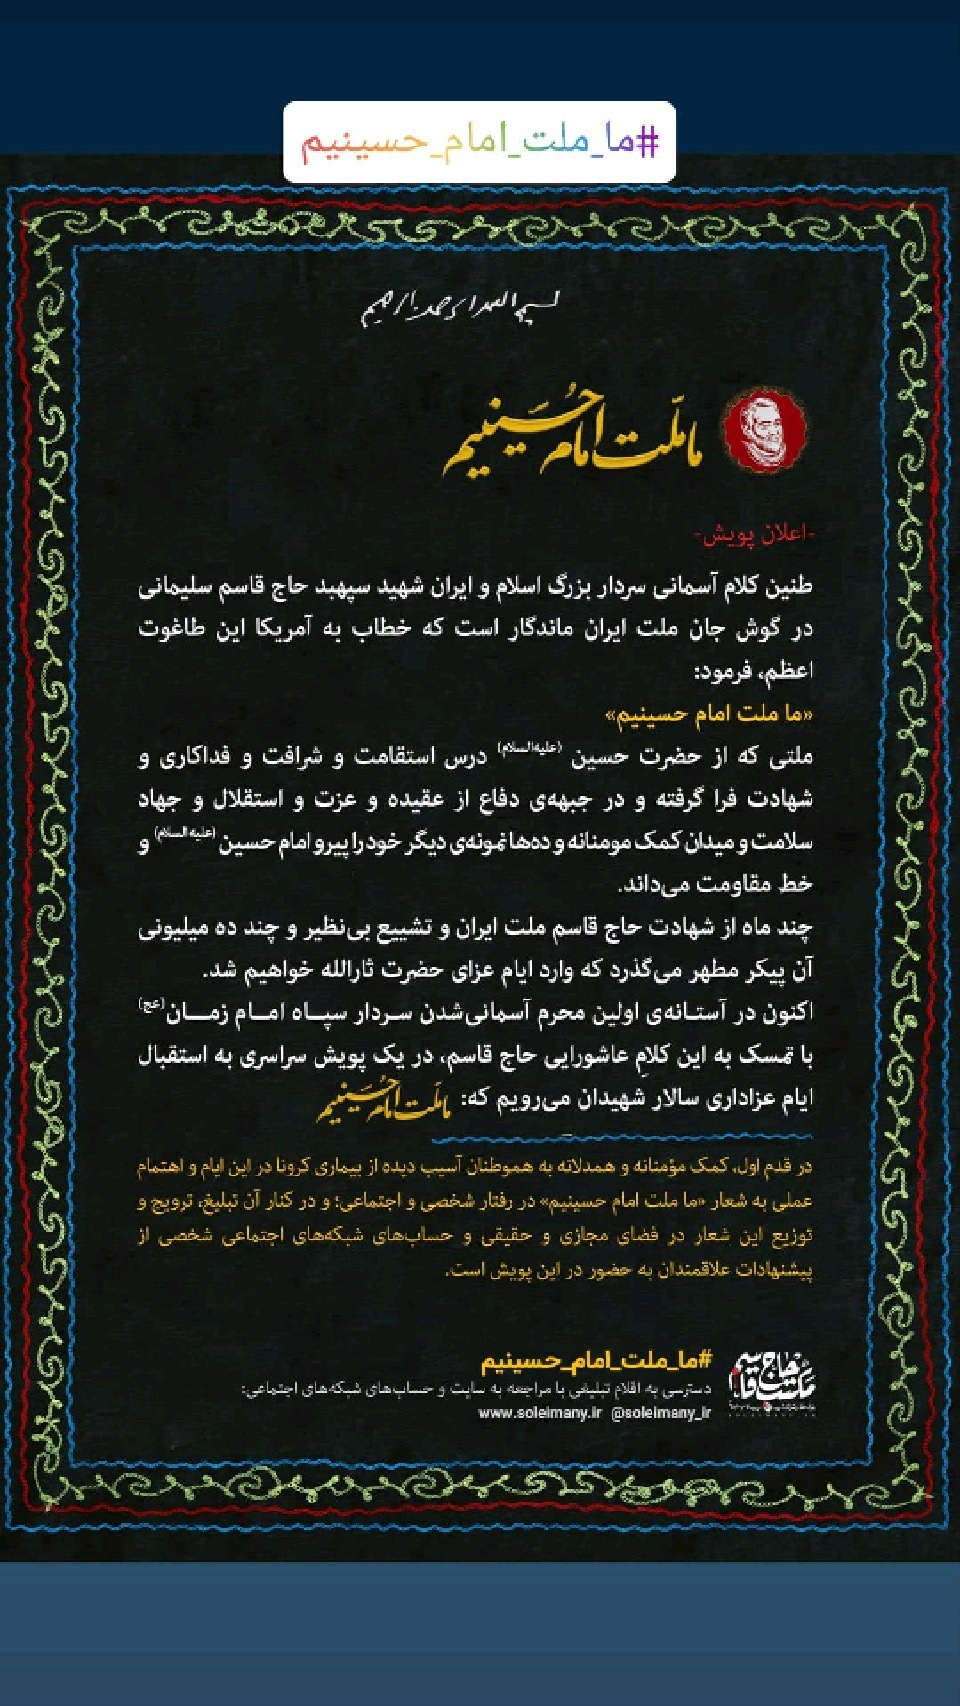 دعوت «زینب سلیمانی» برای شرکت در پویش «#ما_ملت_امام_حسینیم»